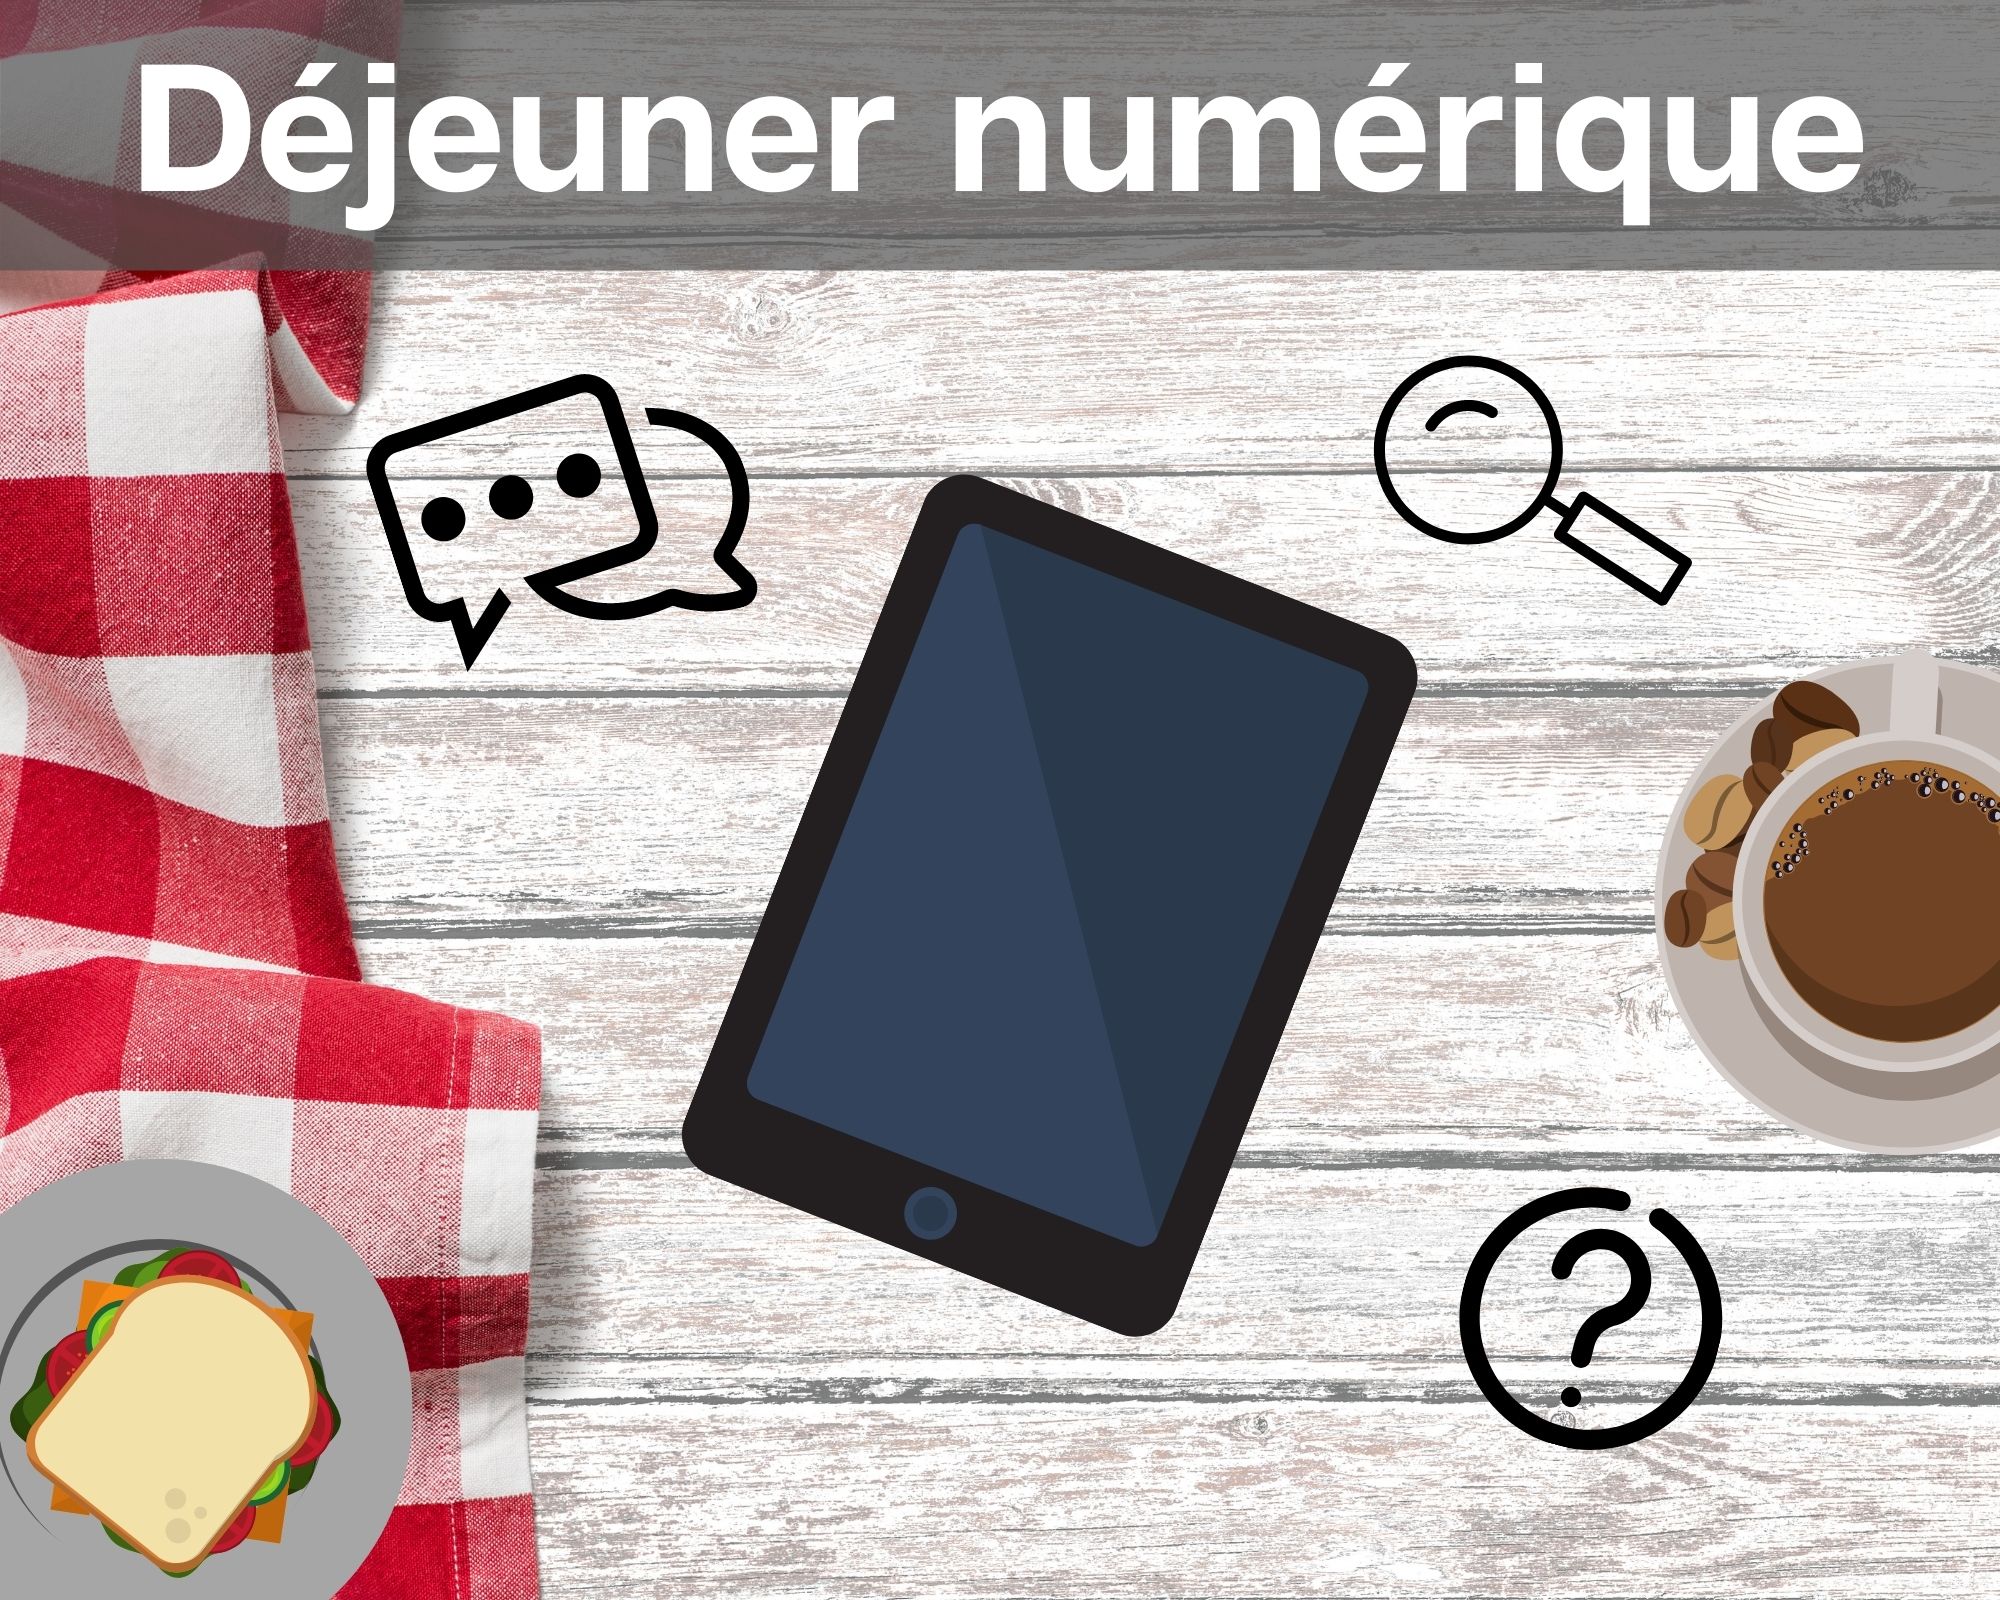 lluo_dejeuners_numeriques_v2